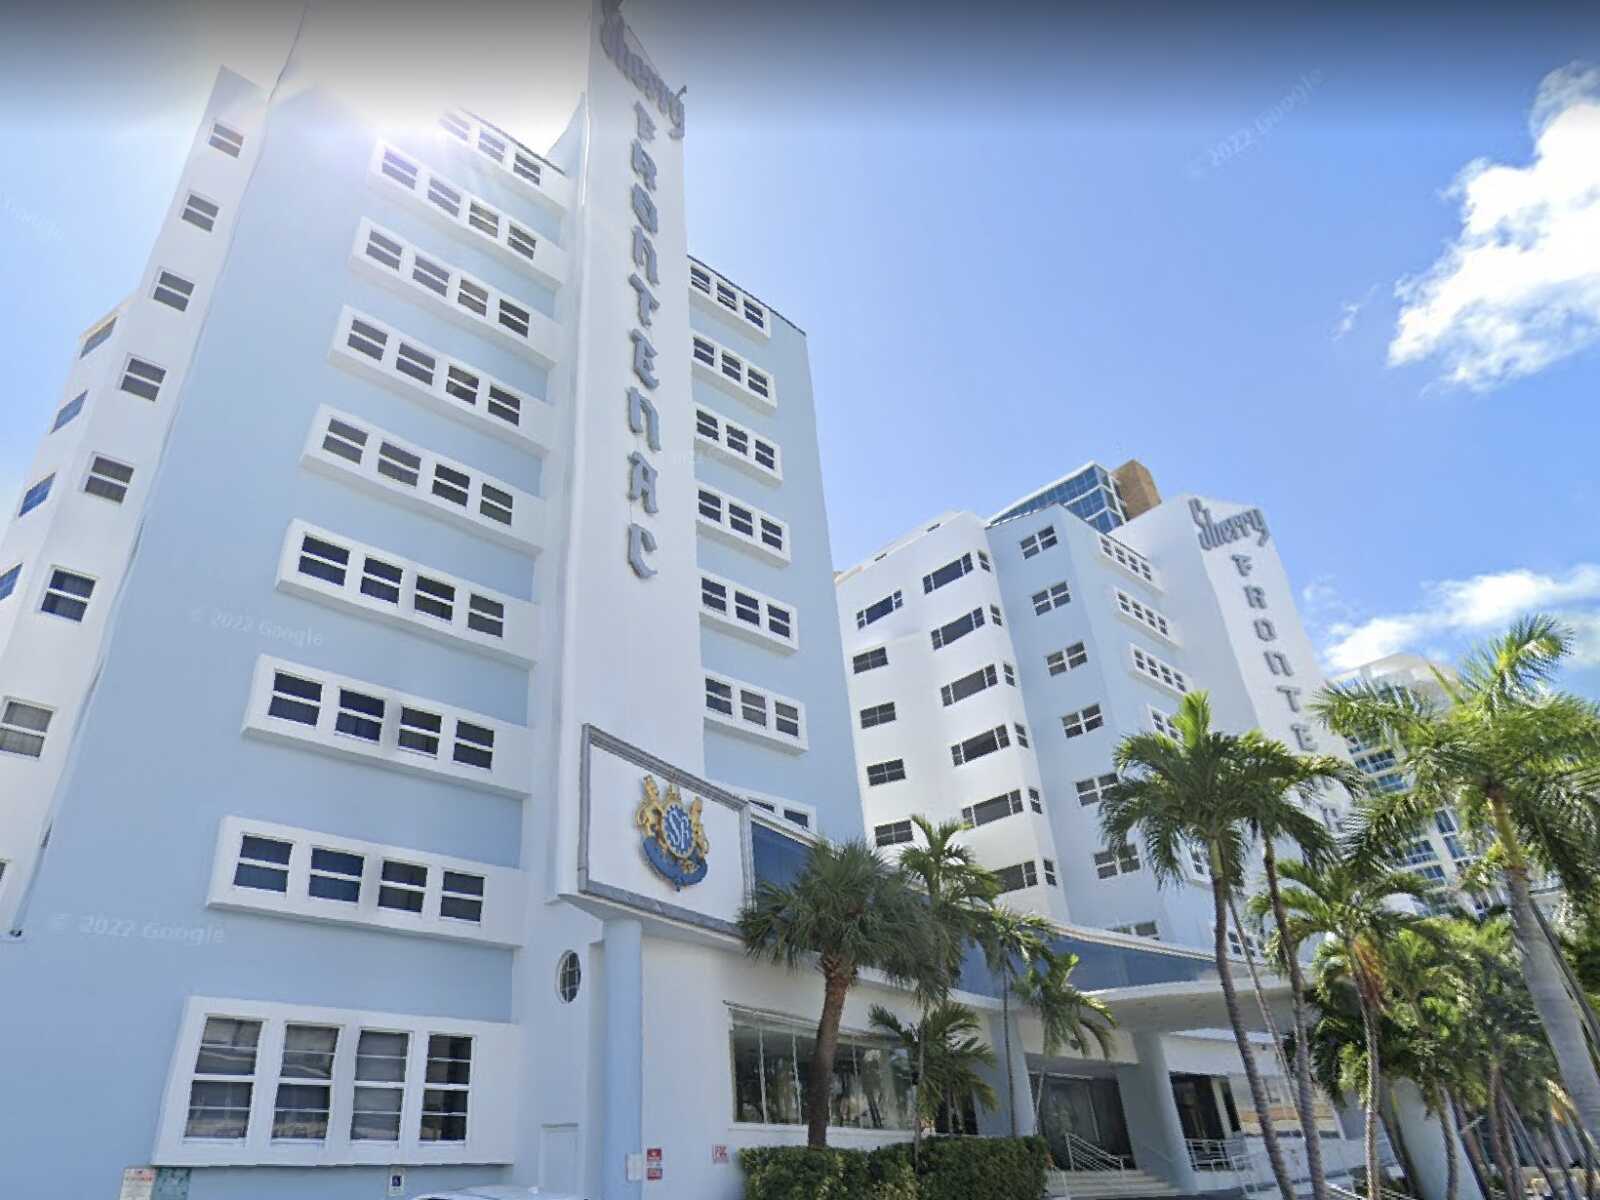 Marelbi Ruiz Lara Discovered Dead In A Miami Beach Hotel